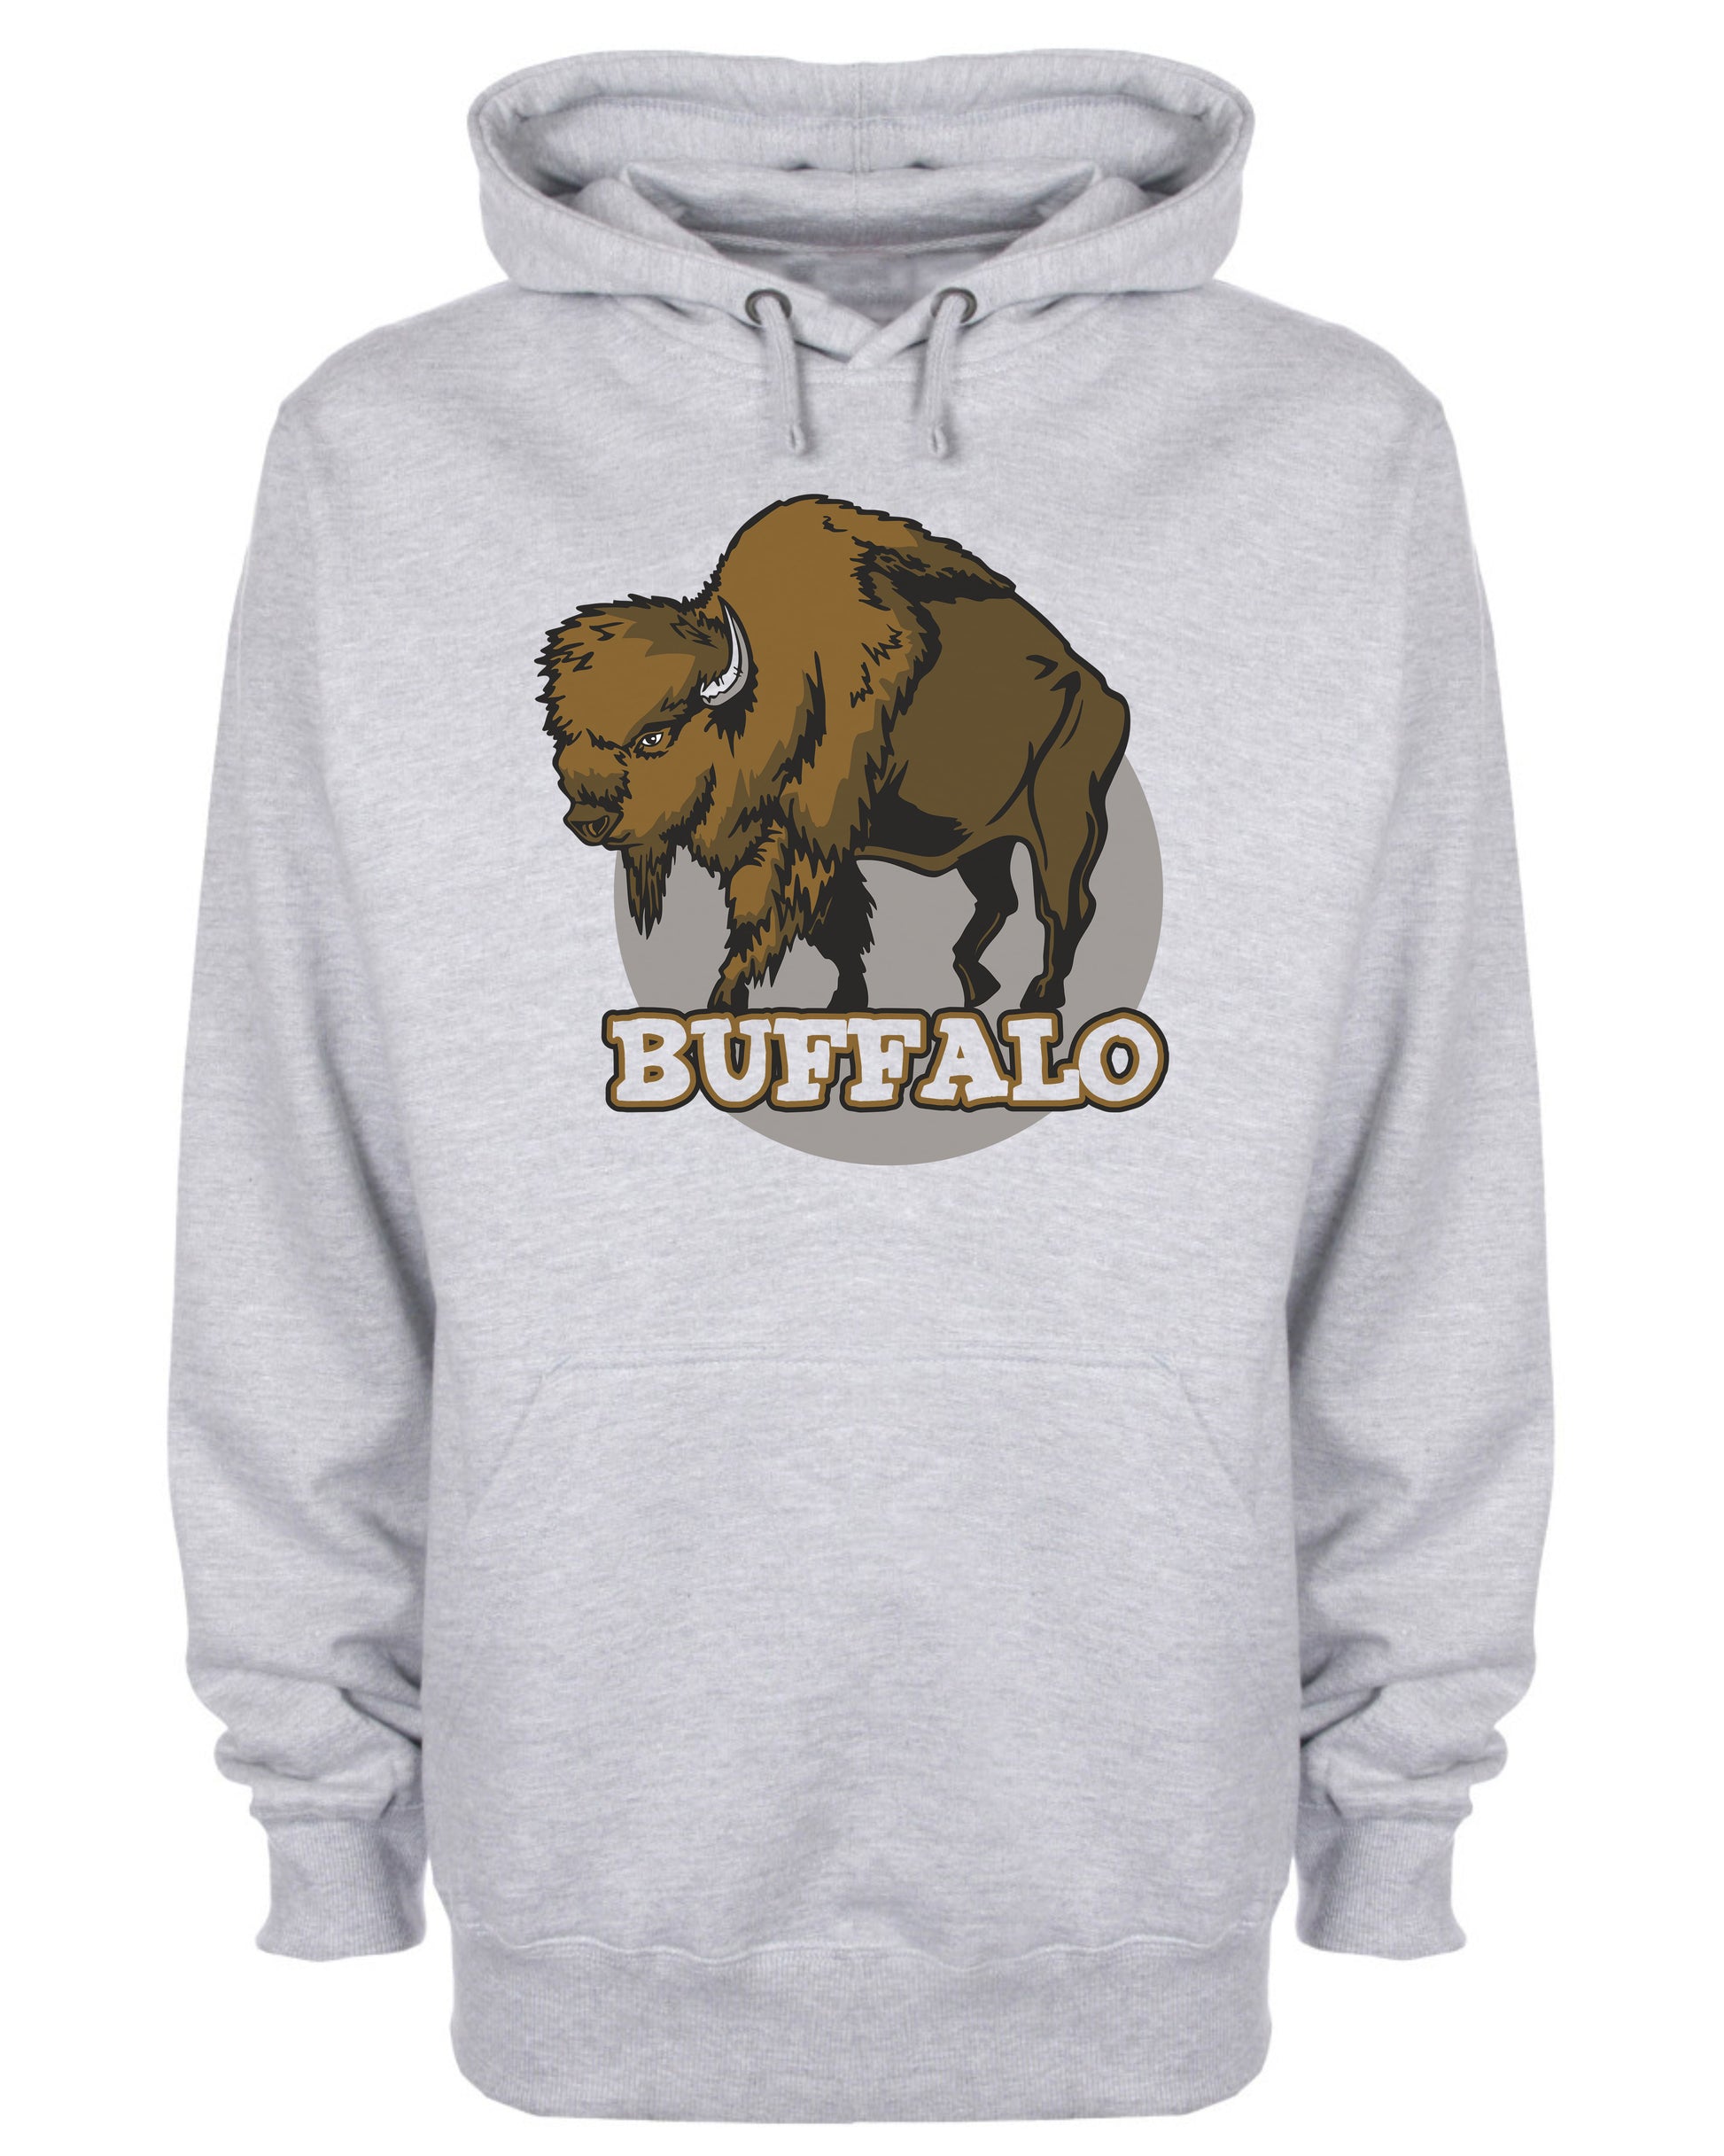 Buffalo Animal Graphic Hooded Sweatshirt